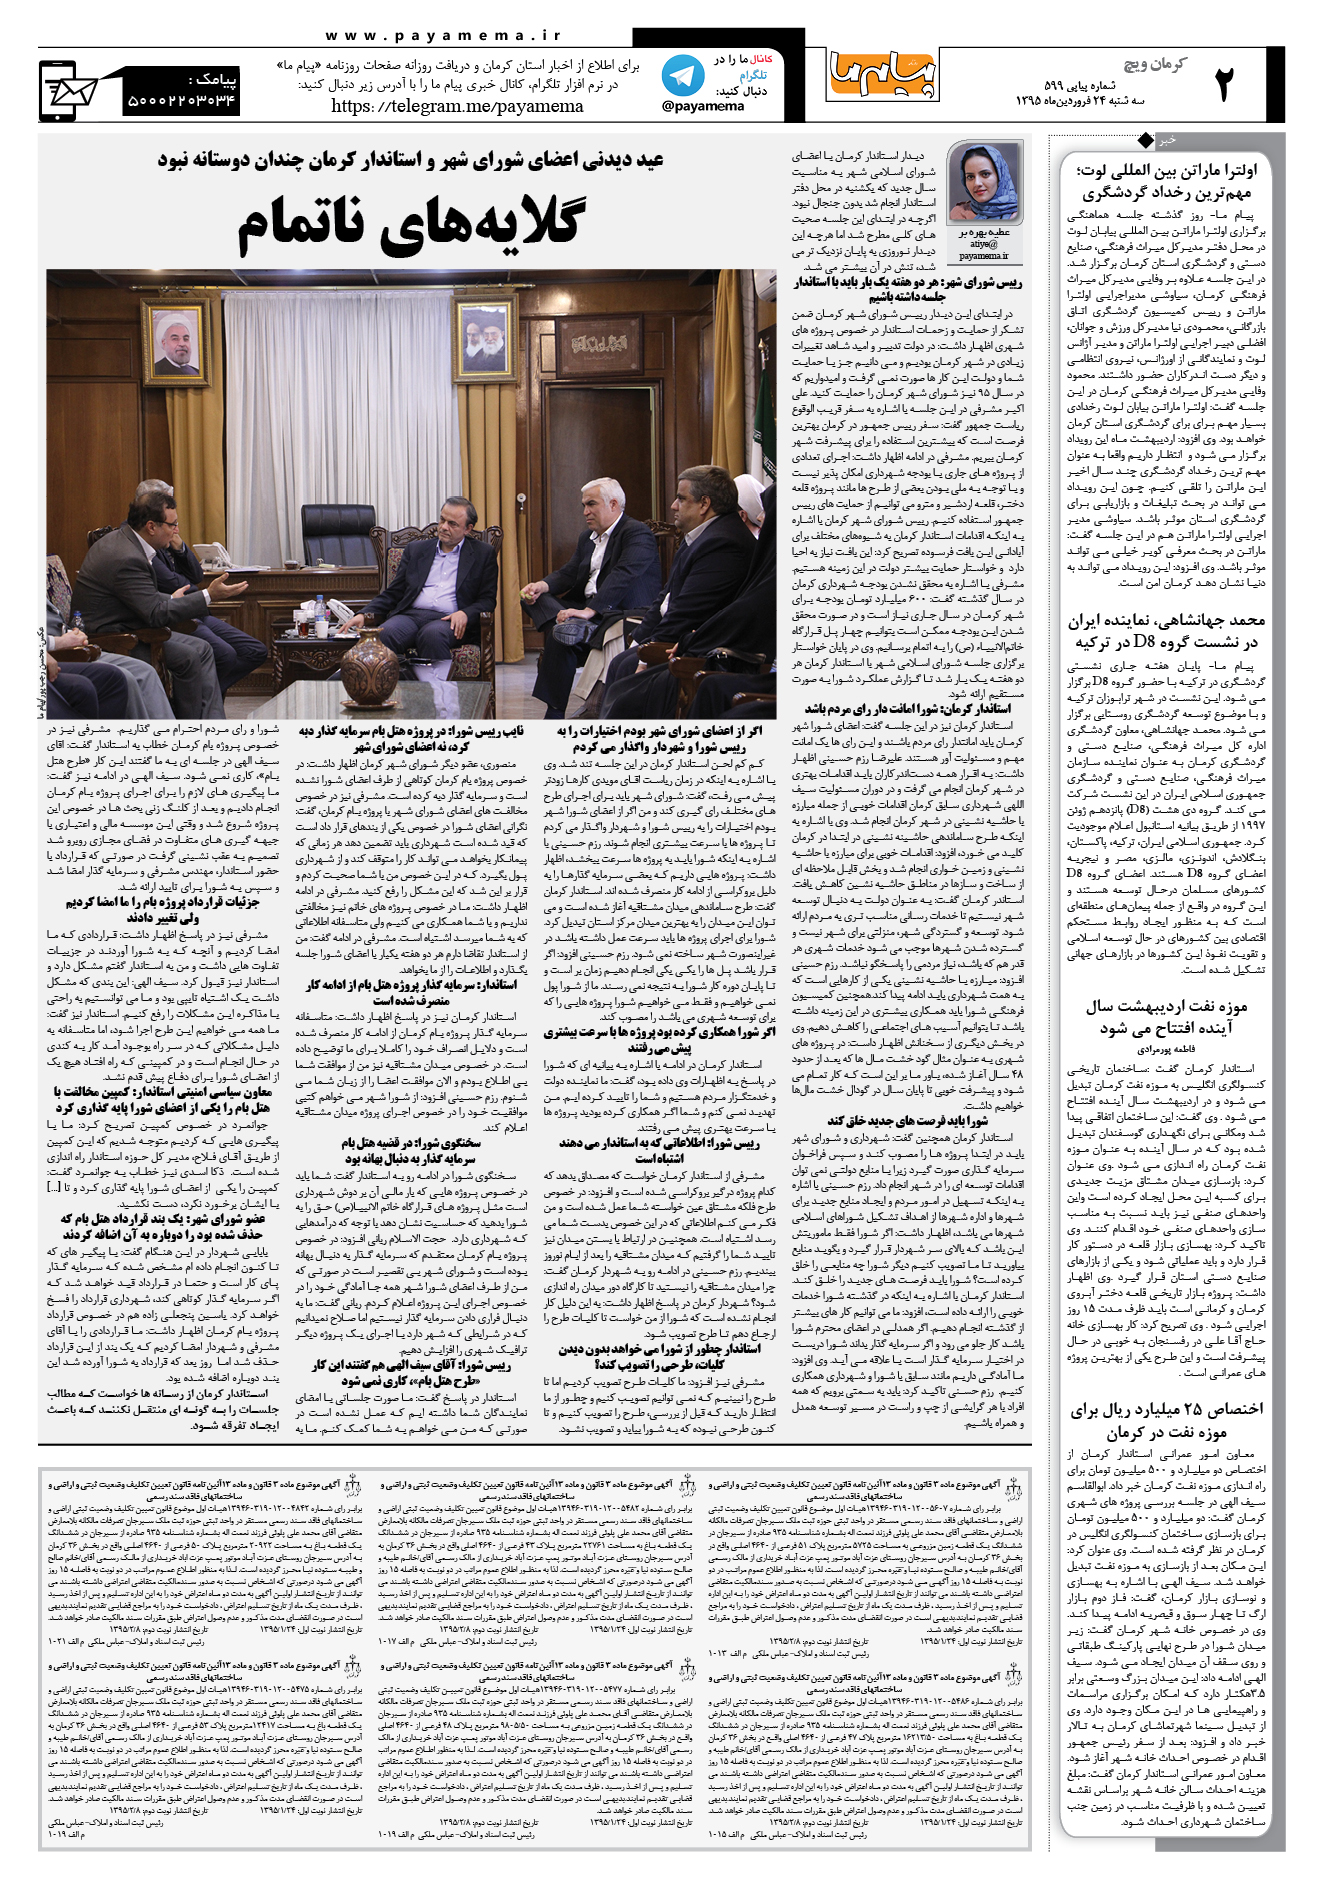 صفحه کرمان ویج شماره 599 روزنامه پیام ما